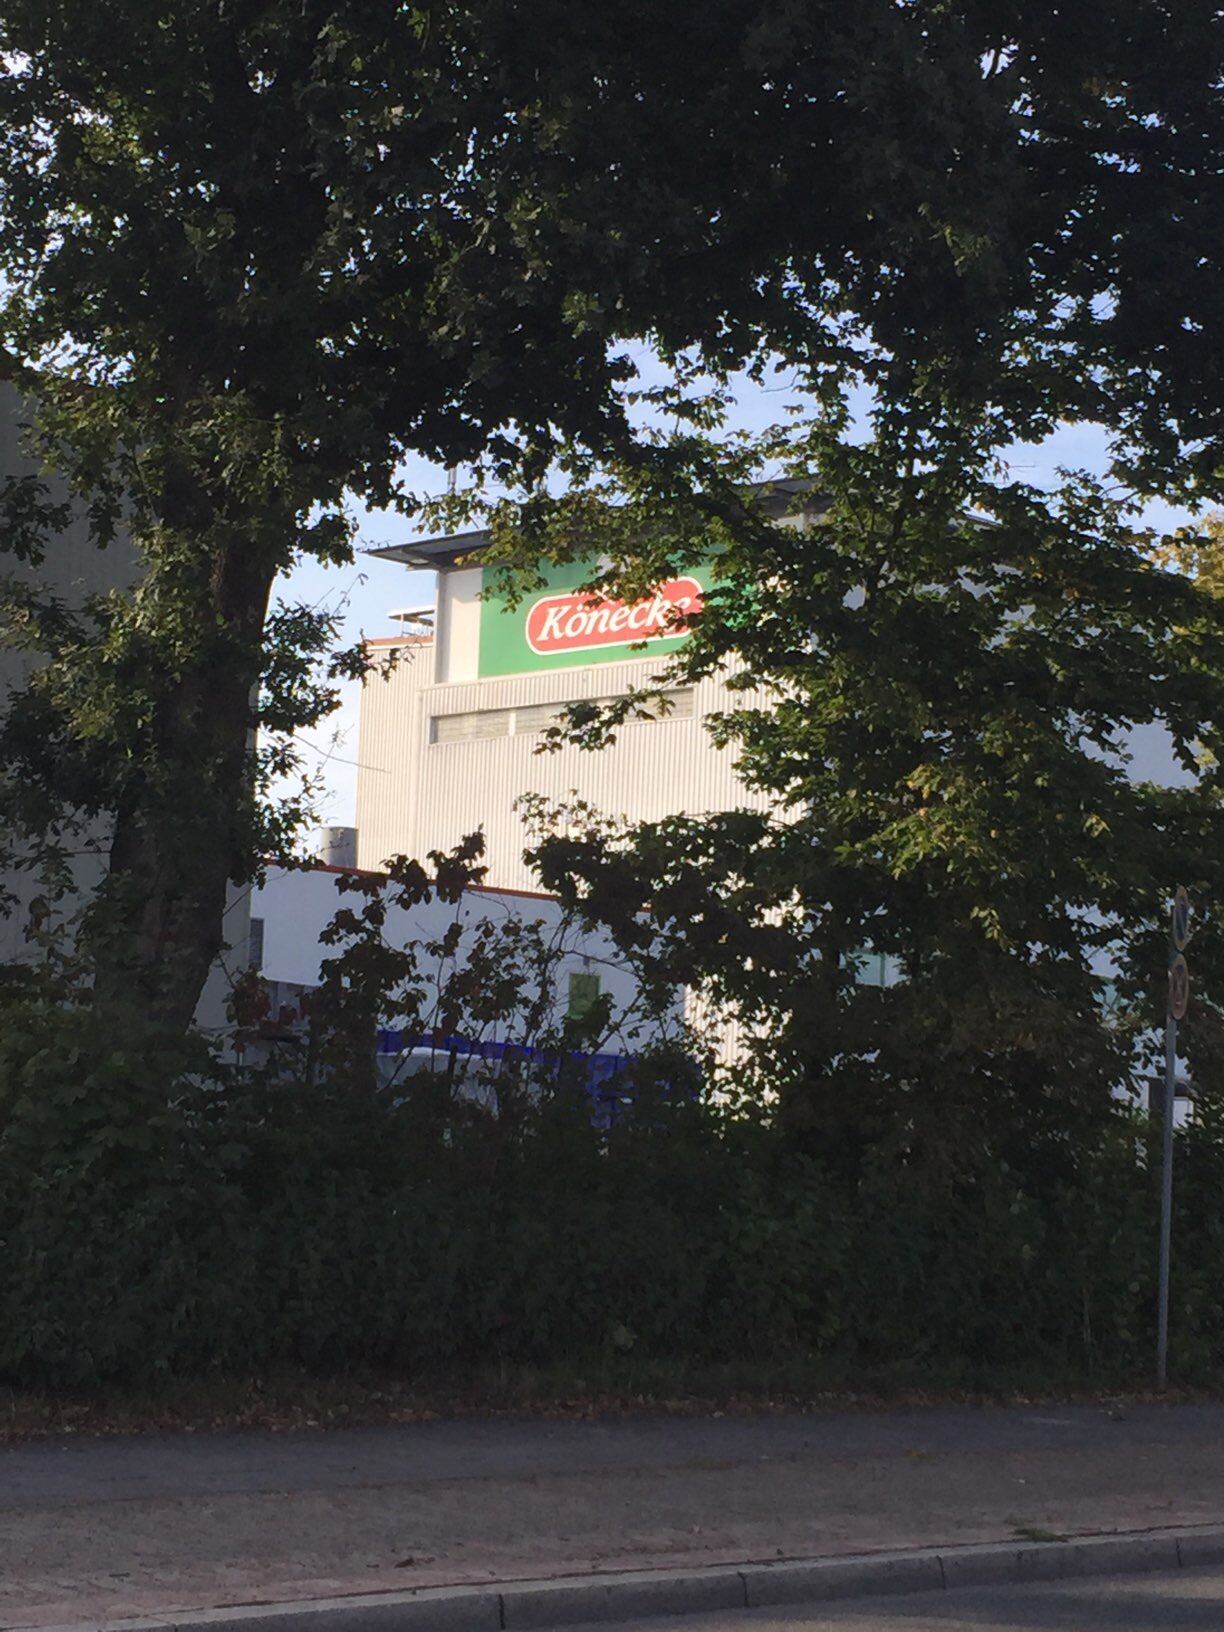 Bild 3 Könecke Fleischwarenfabrik in Delmenhorst